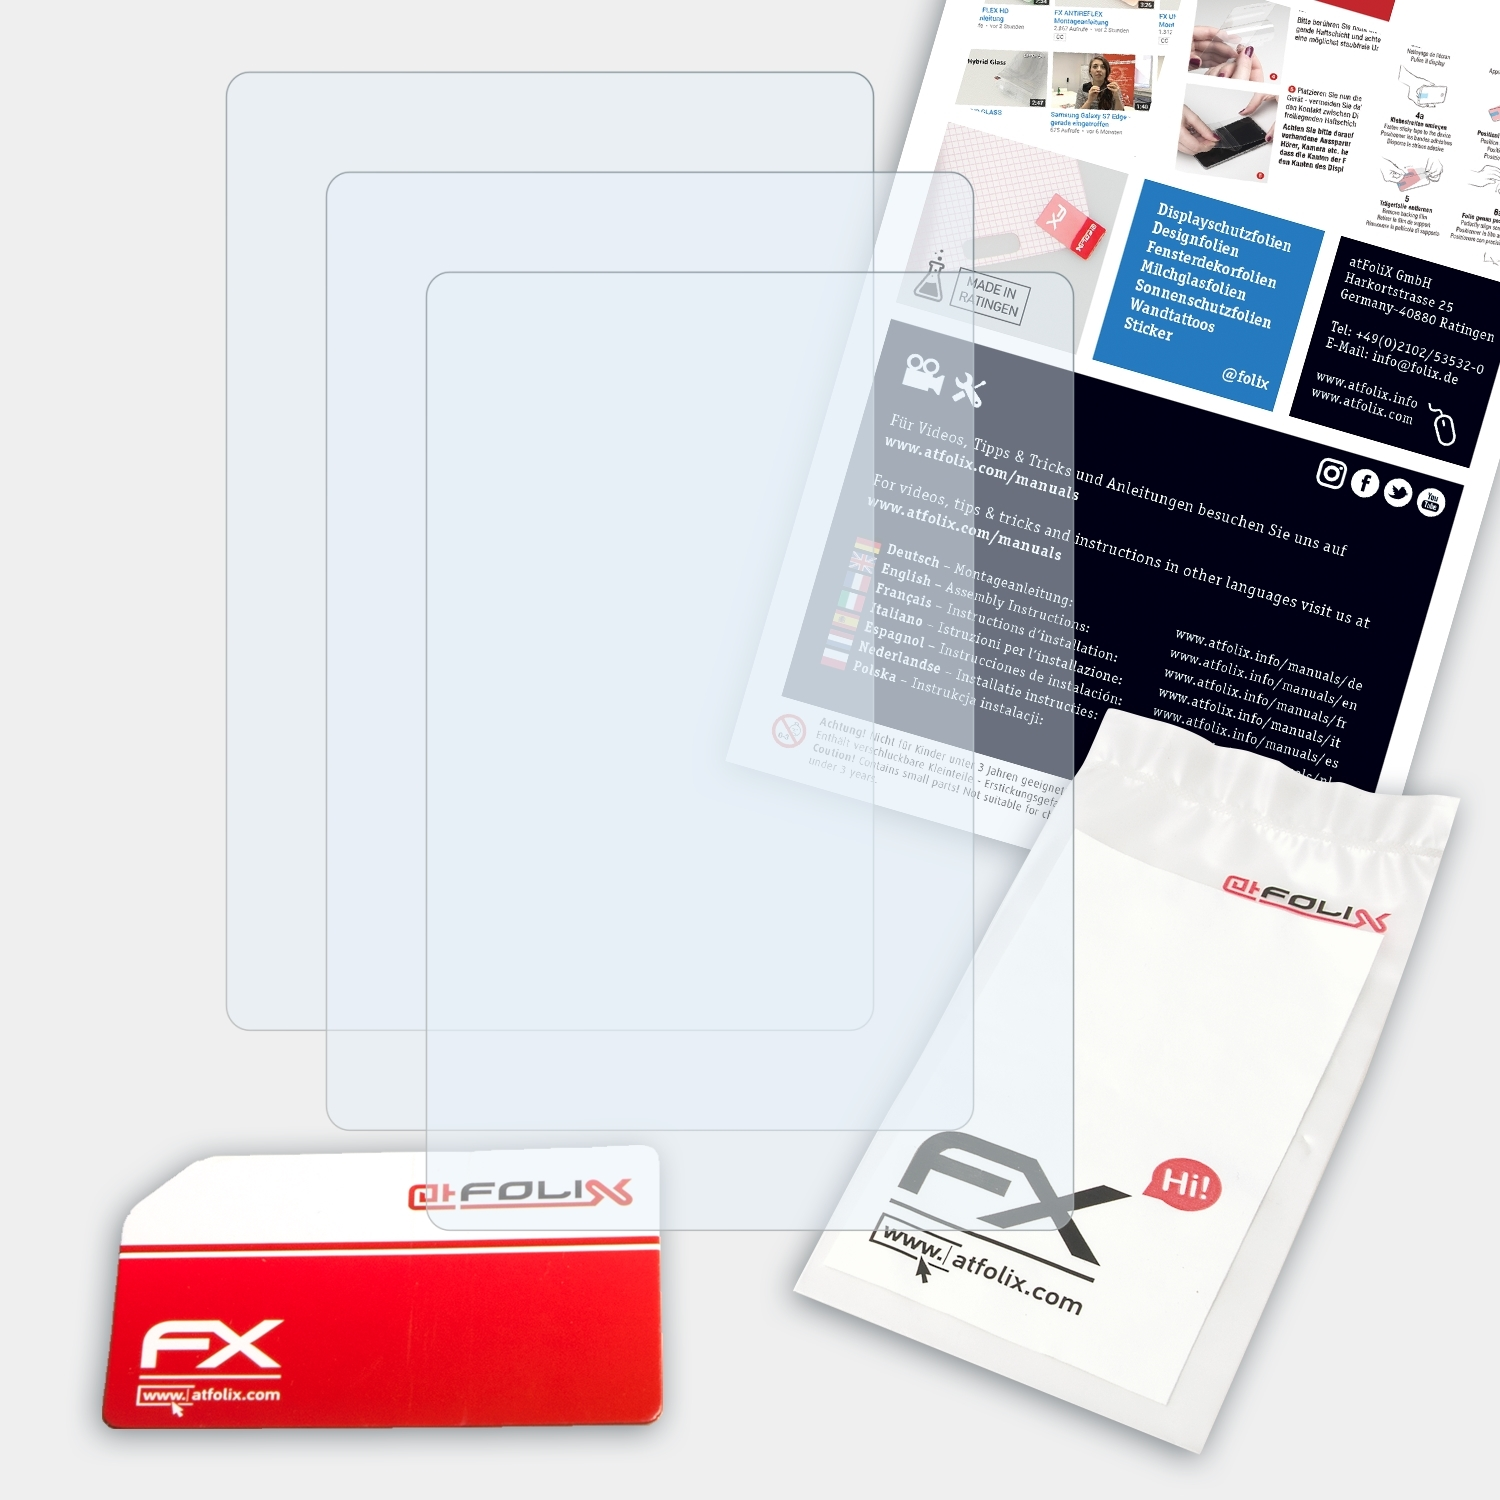 ATFOLIX 3x FX-Clear Displayschutz(für Kiox) Bosch